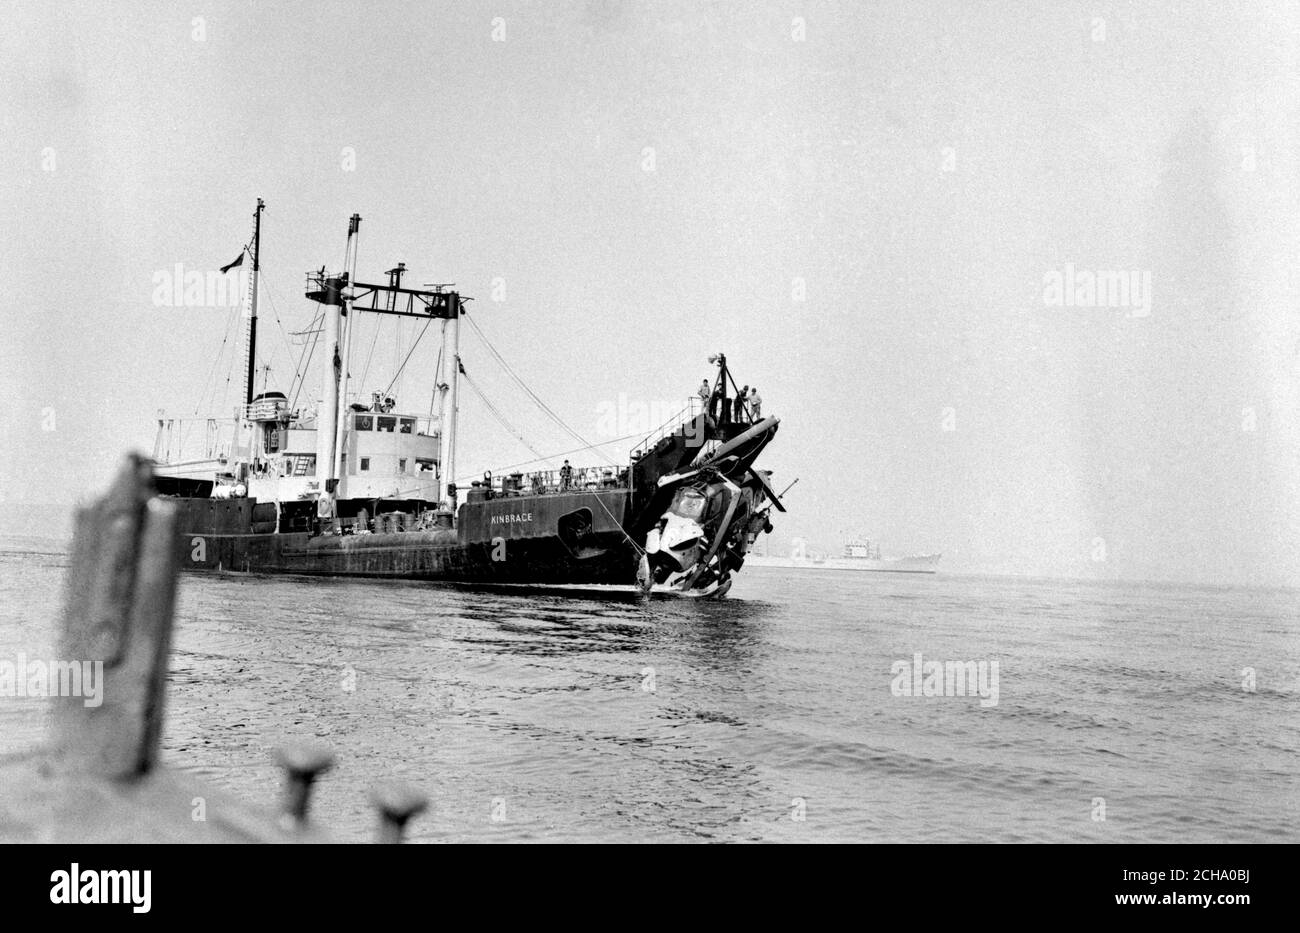 L'elicottero Wessex che trasporta fotografi della stampa, tra cui il fotografo dell'PA Nick Beer, che si è schiantato in mare al largo di Portland, viene mostrato sollevato dalla baia di Weymouth dalla nave di salvataggio Kinbrace. Foto Stock